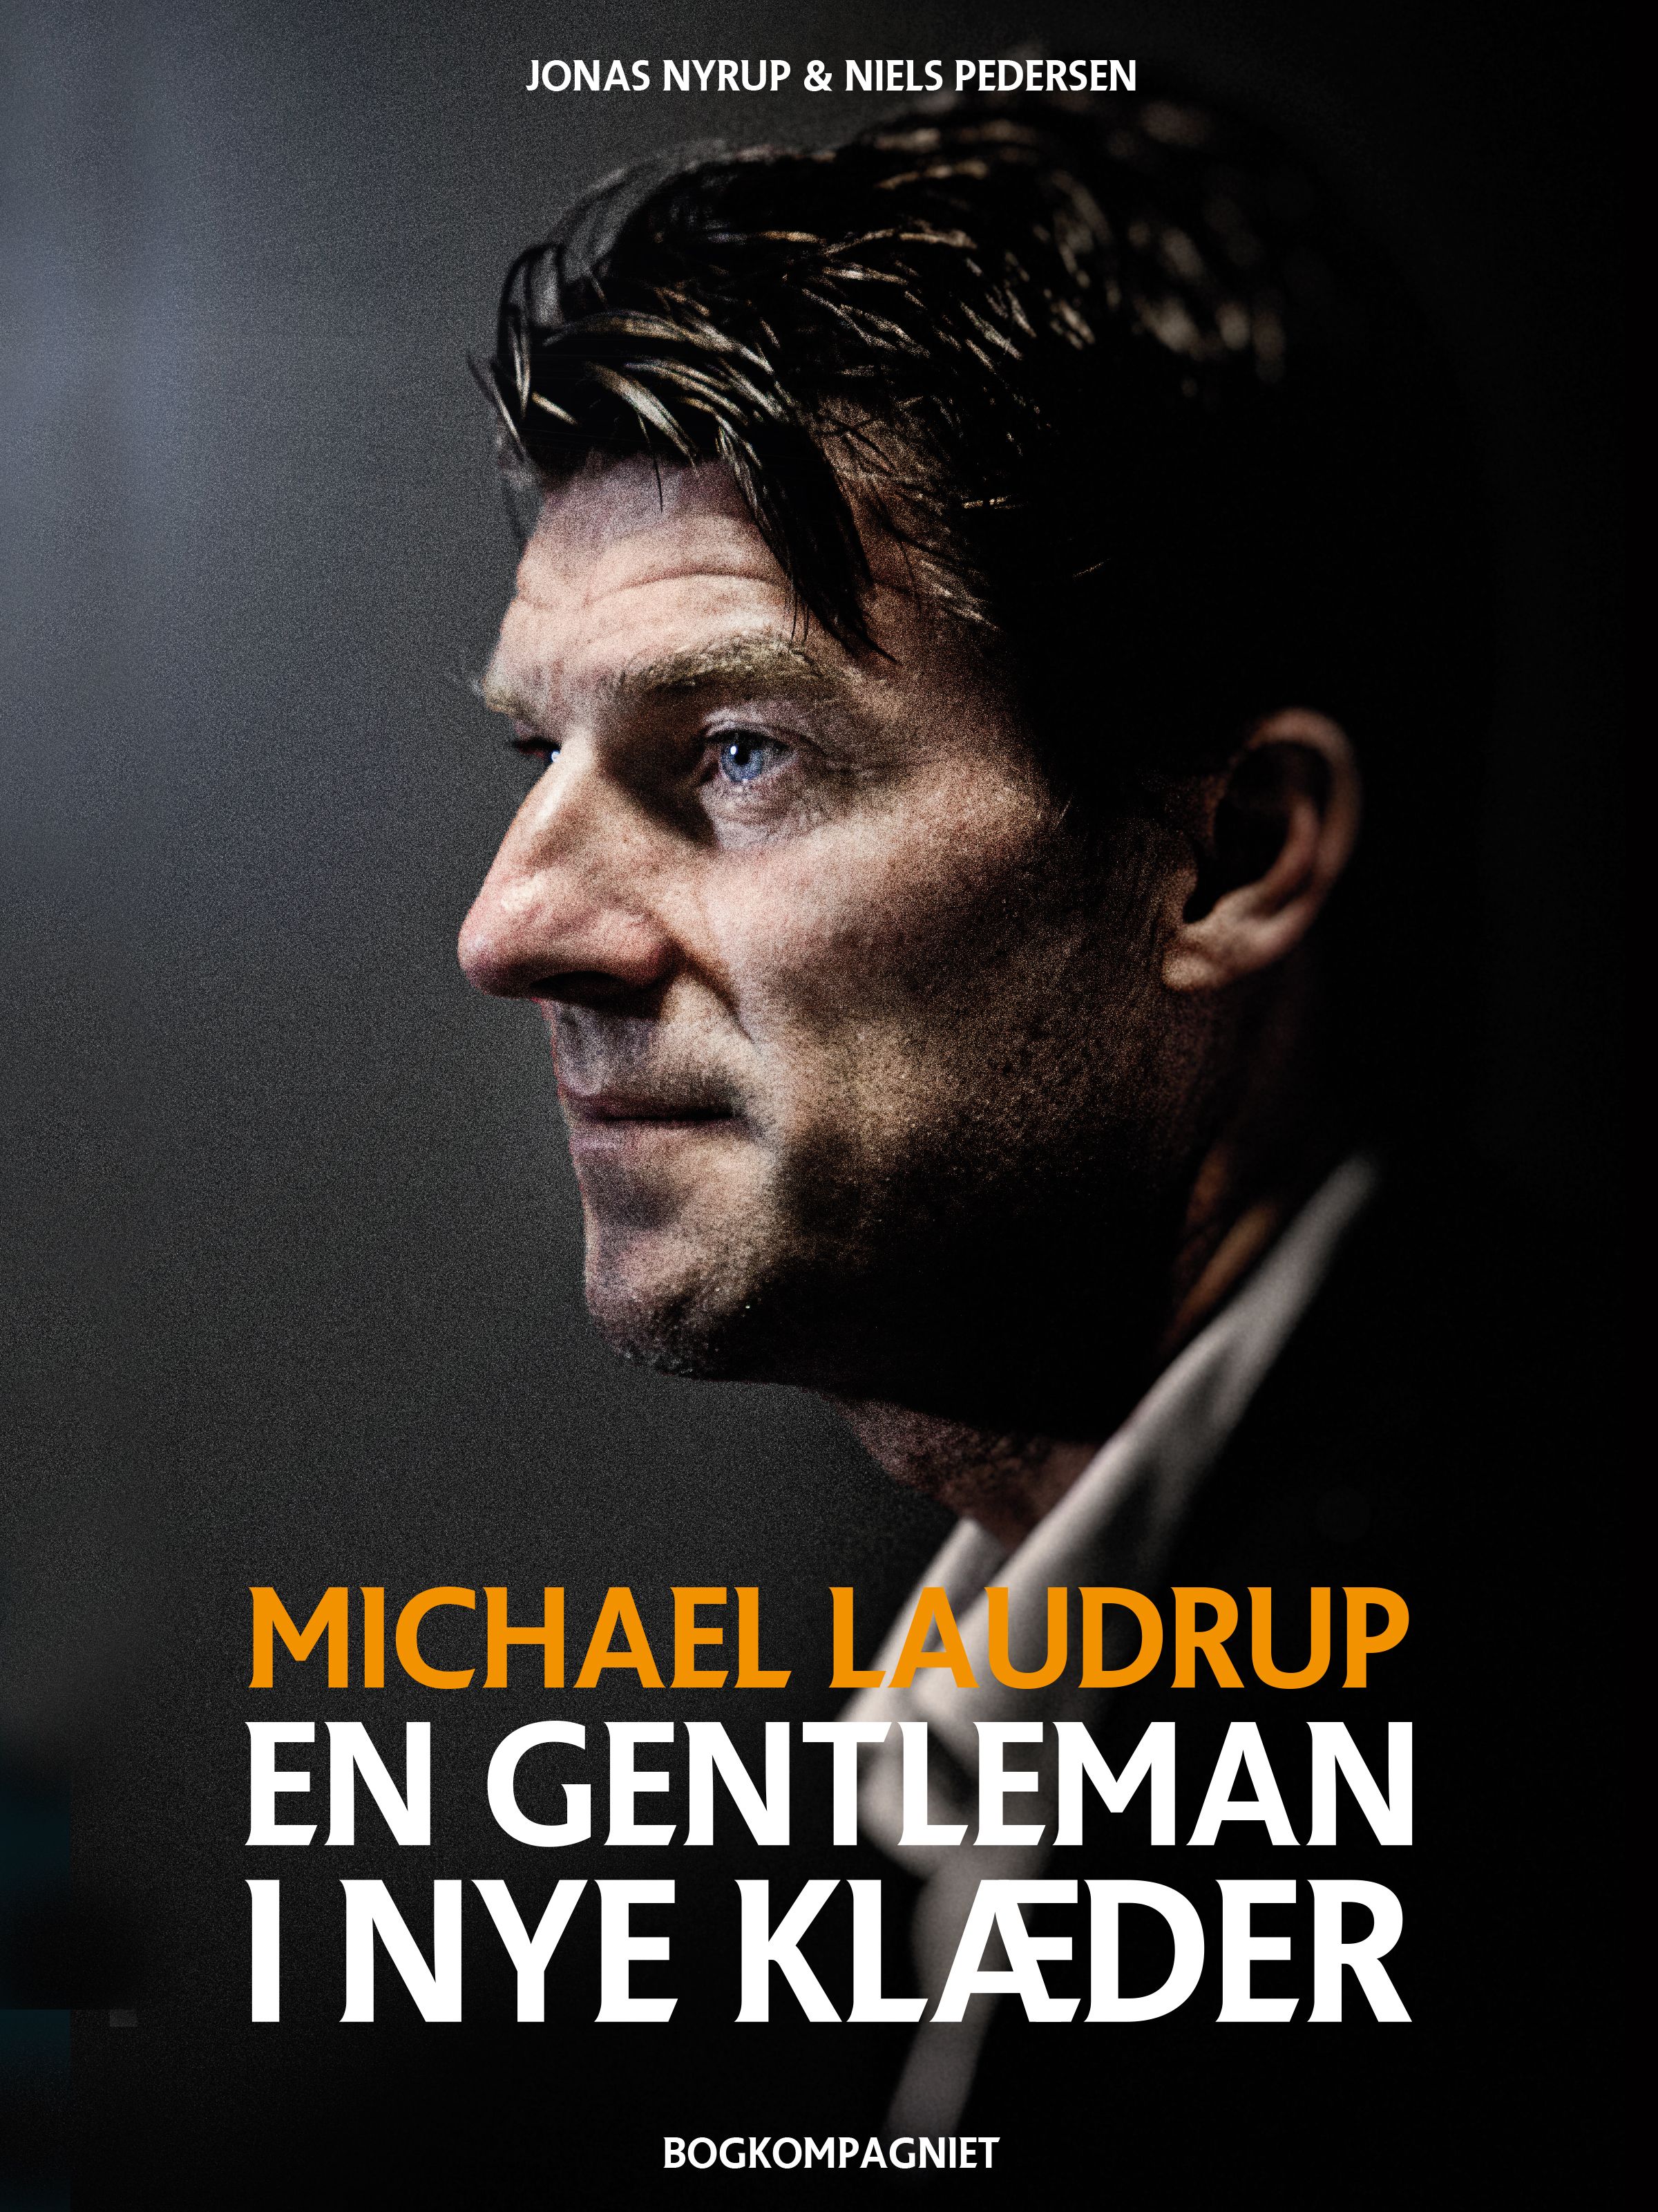 Michael Laudrup - en gentleman i nye klæder, eBook by Jonas Nyrup, Niels Pedersen